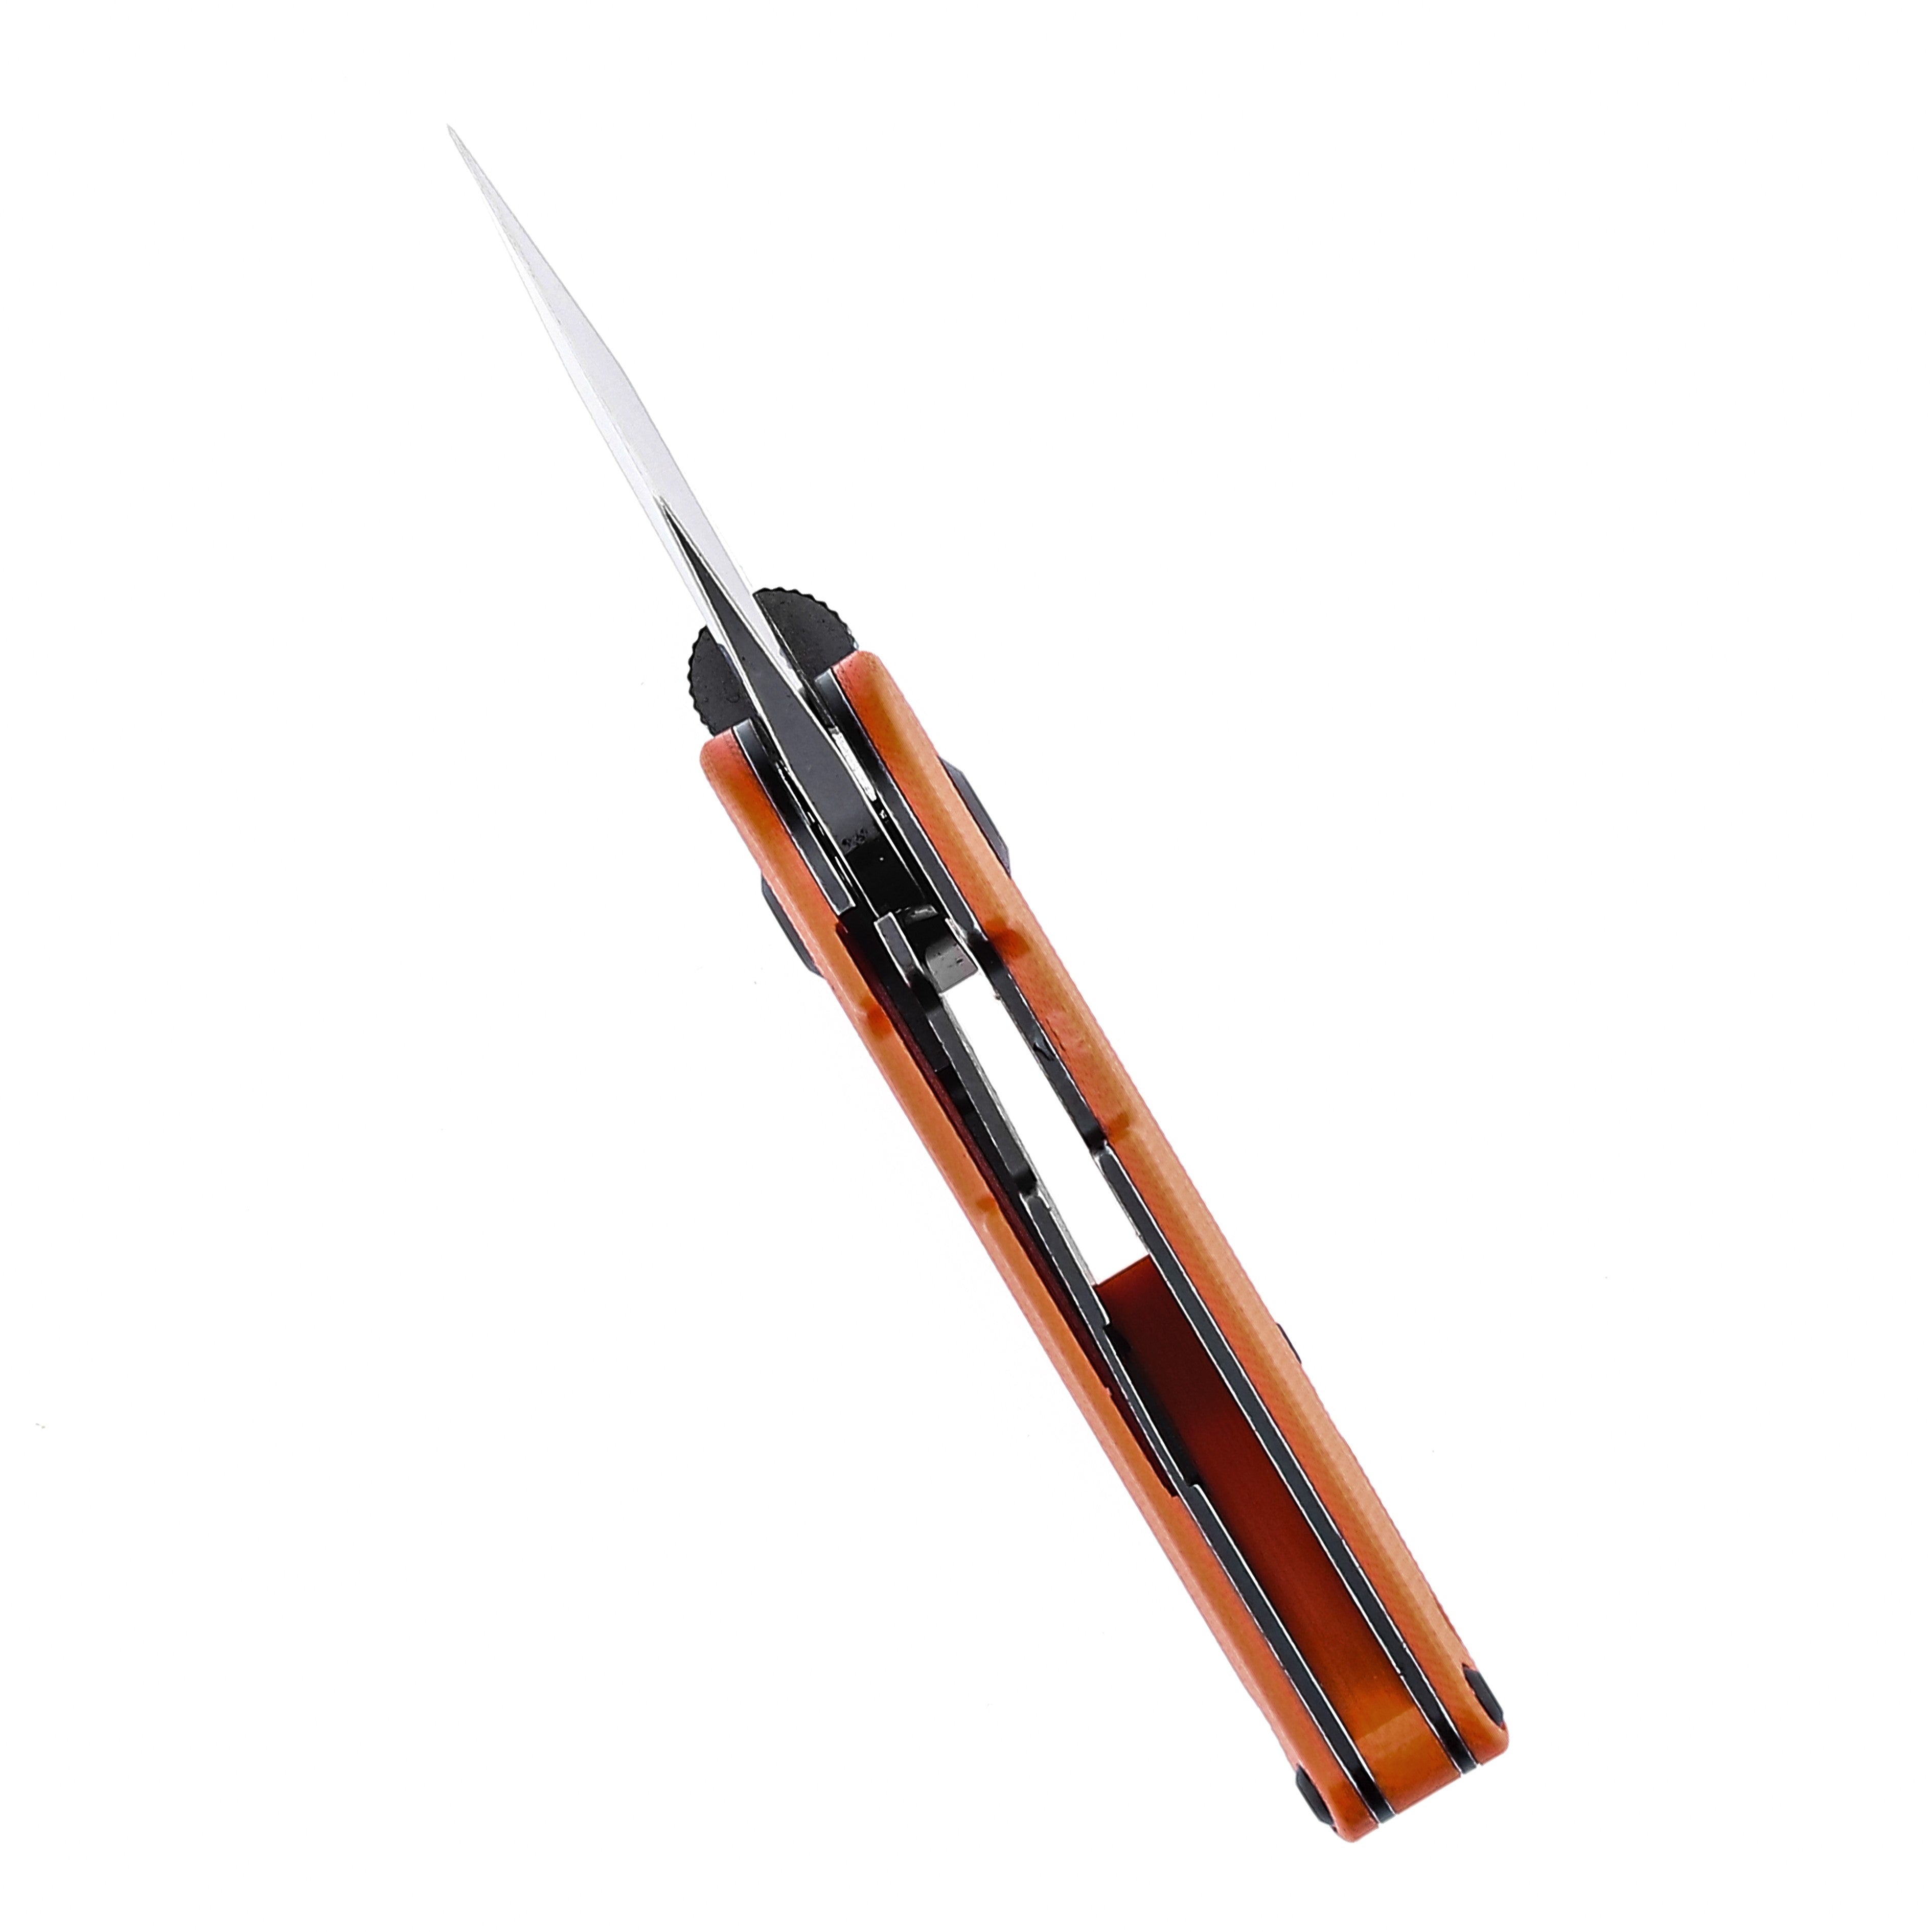 Kansept Knives Dash T3045A3 154CM Blade Orange G10 Liner Lock Edc Knives